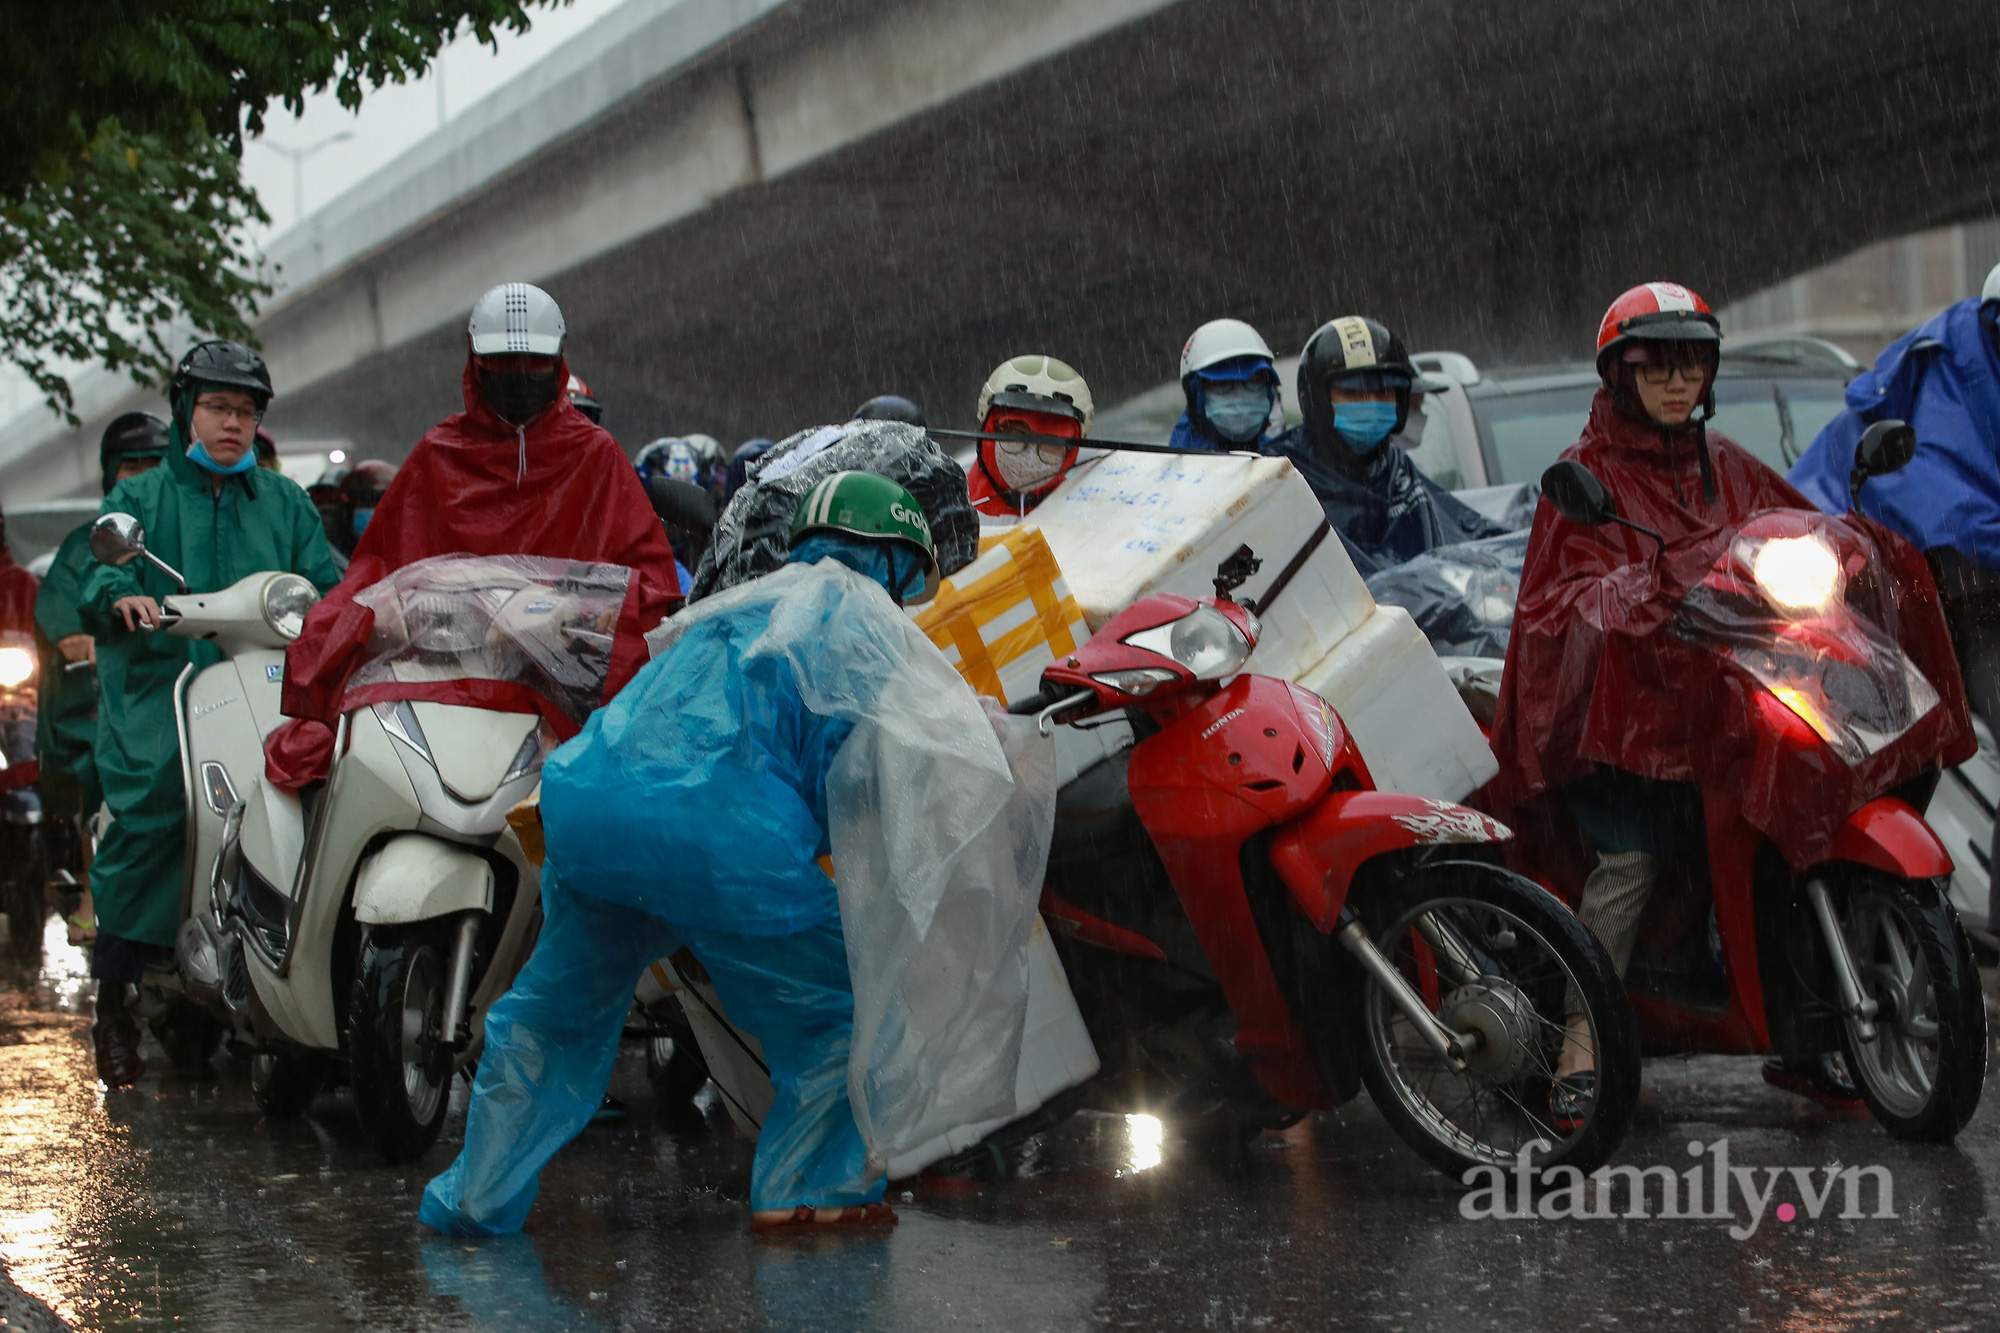 Đường phố ùn tắc, người Hà Nội vật lộn đi làm trong cơn mưa tầm tã - Ảnh 9.